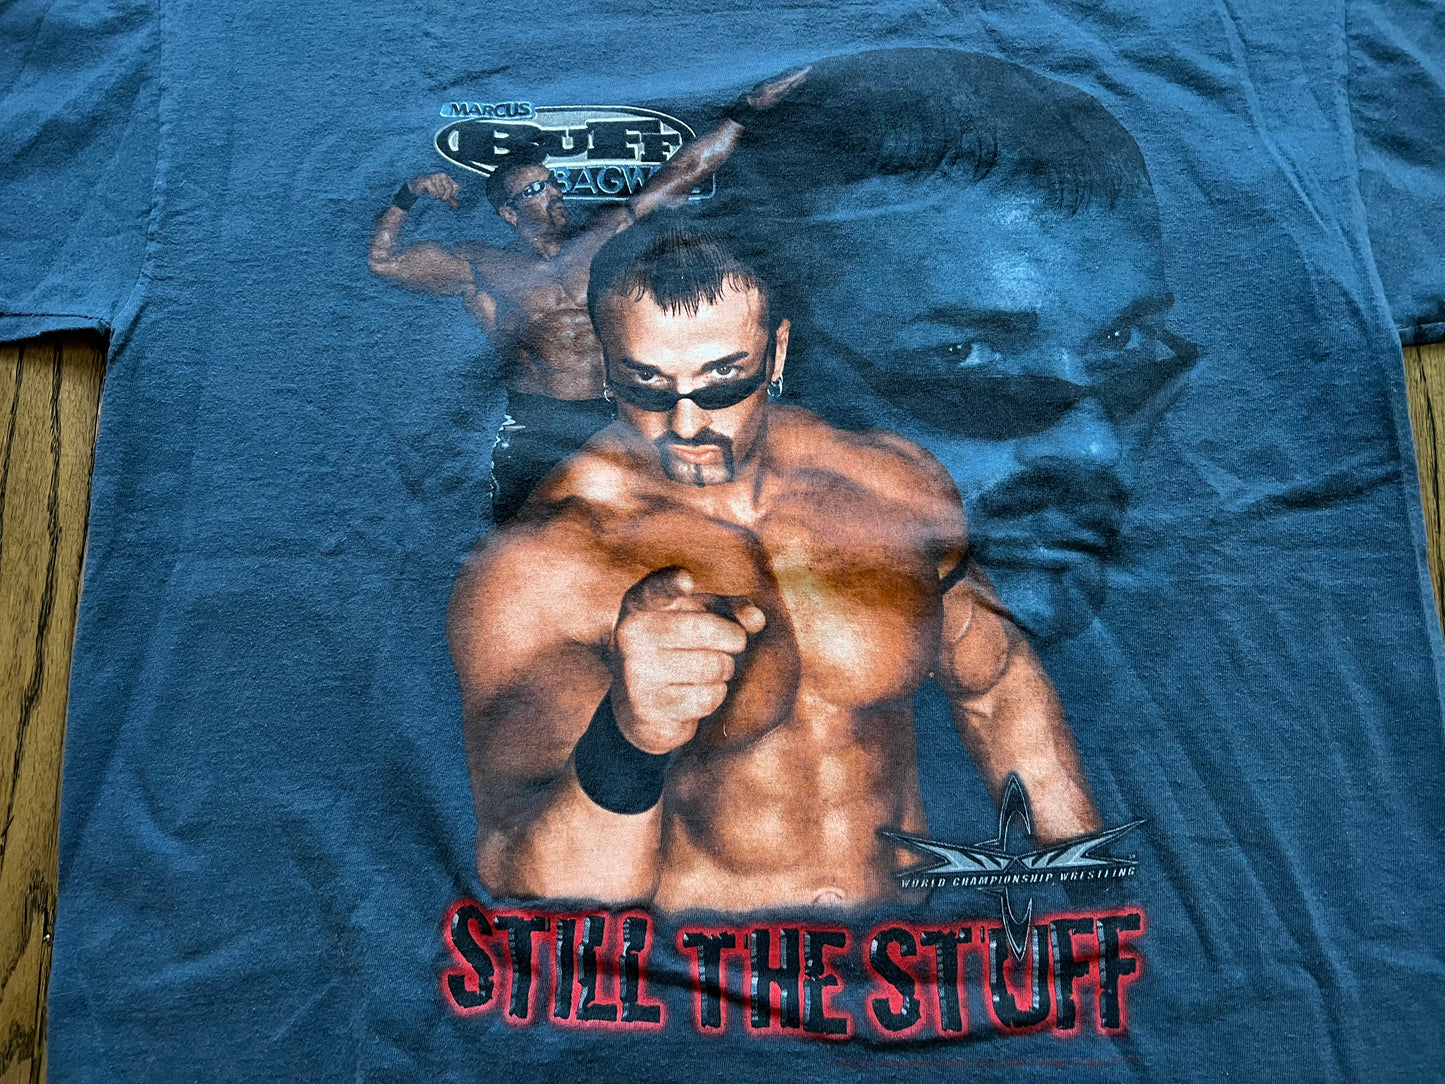 1999 WCW Buff Bagwell “Buff Is The Stuff” shirt